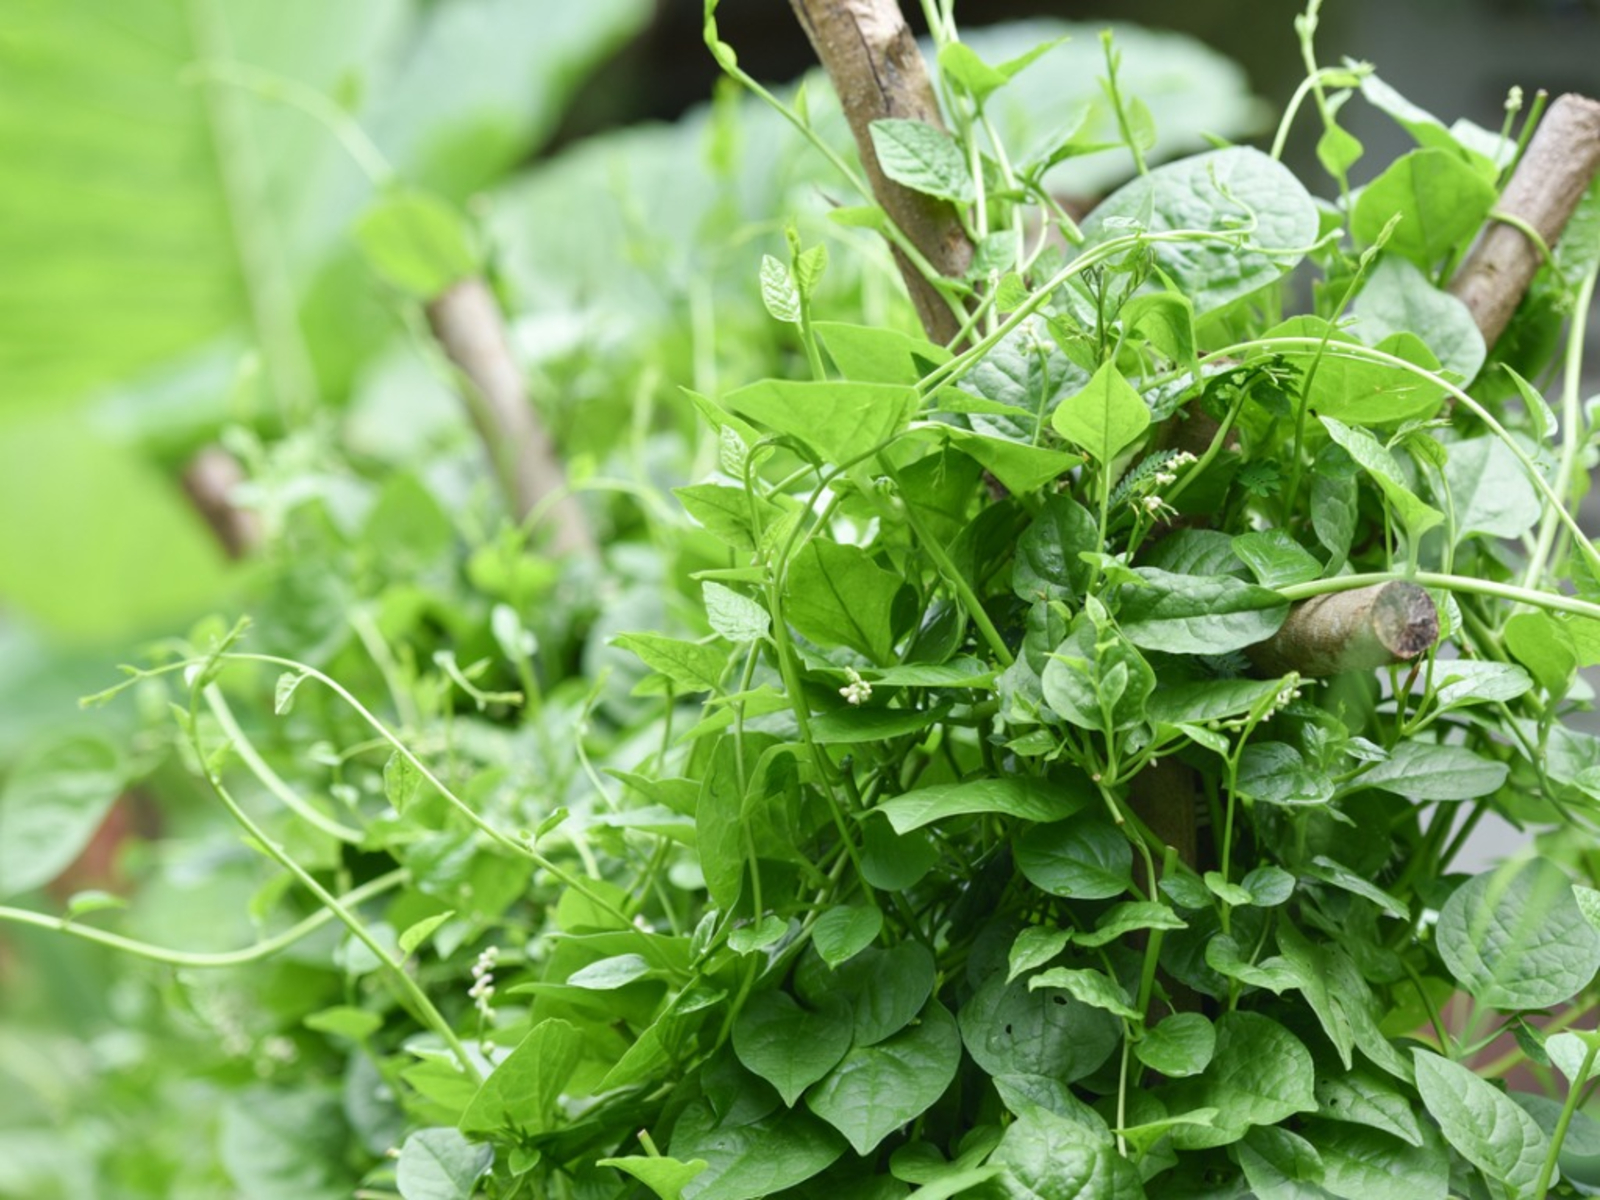 Rau mồng tơi Malabar Rau bina là một loại cây dây leo có tán lá xanh tốt vào mùa hè để làm món salad và nấu ăn. Cây này được trồng tốt nhất ở những nơi có thời tiết 90 độ trong mùa hè.